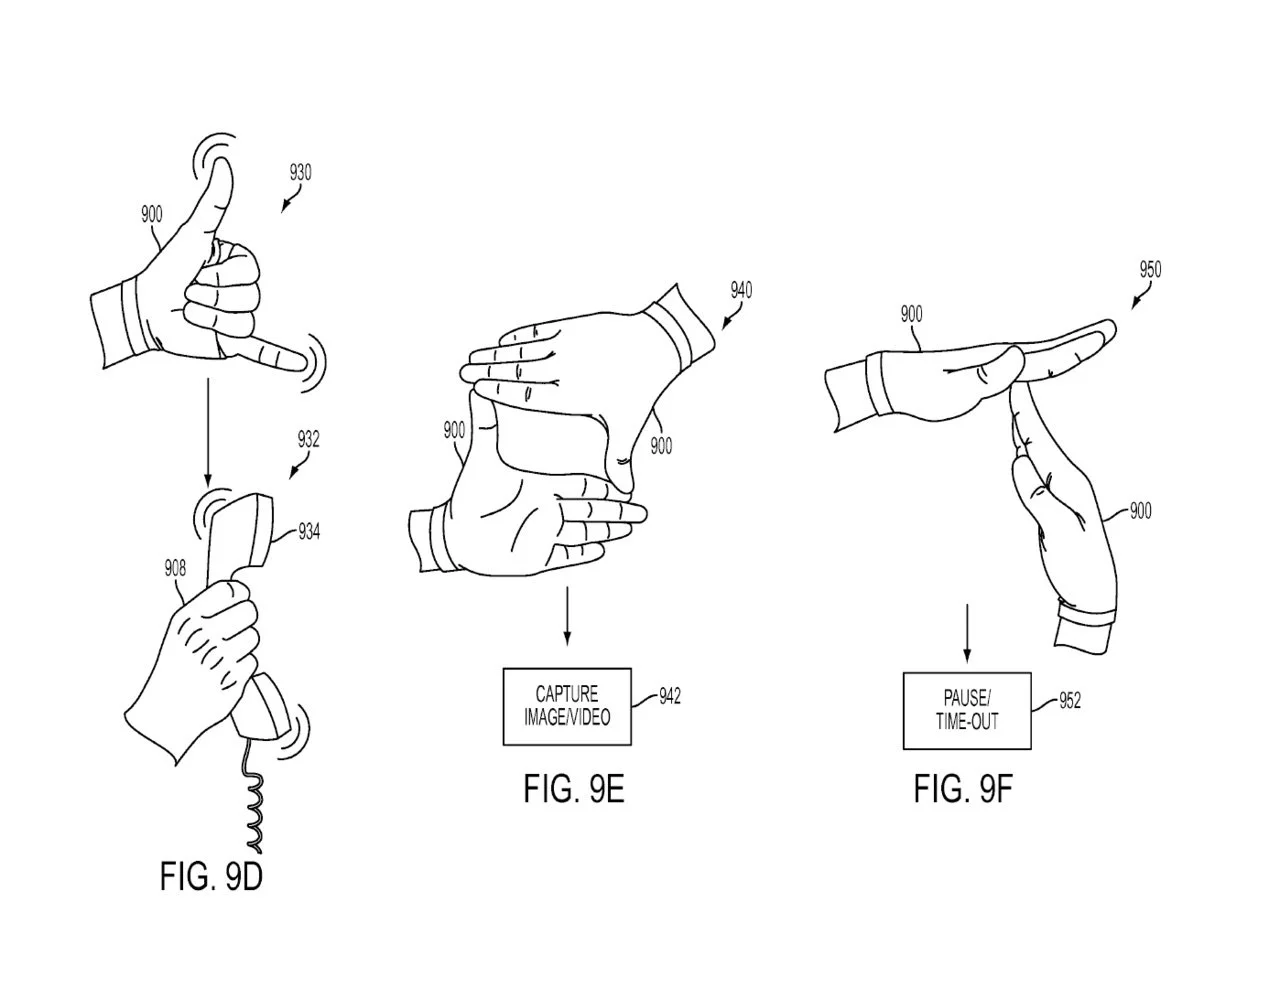 Sony готовит перчатку для виртуальной реальности - фото 3